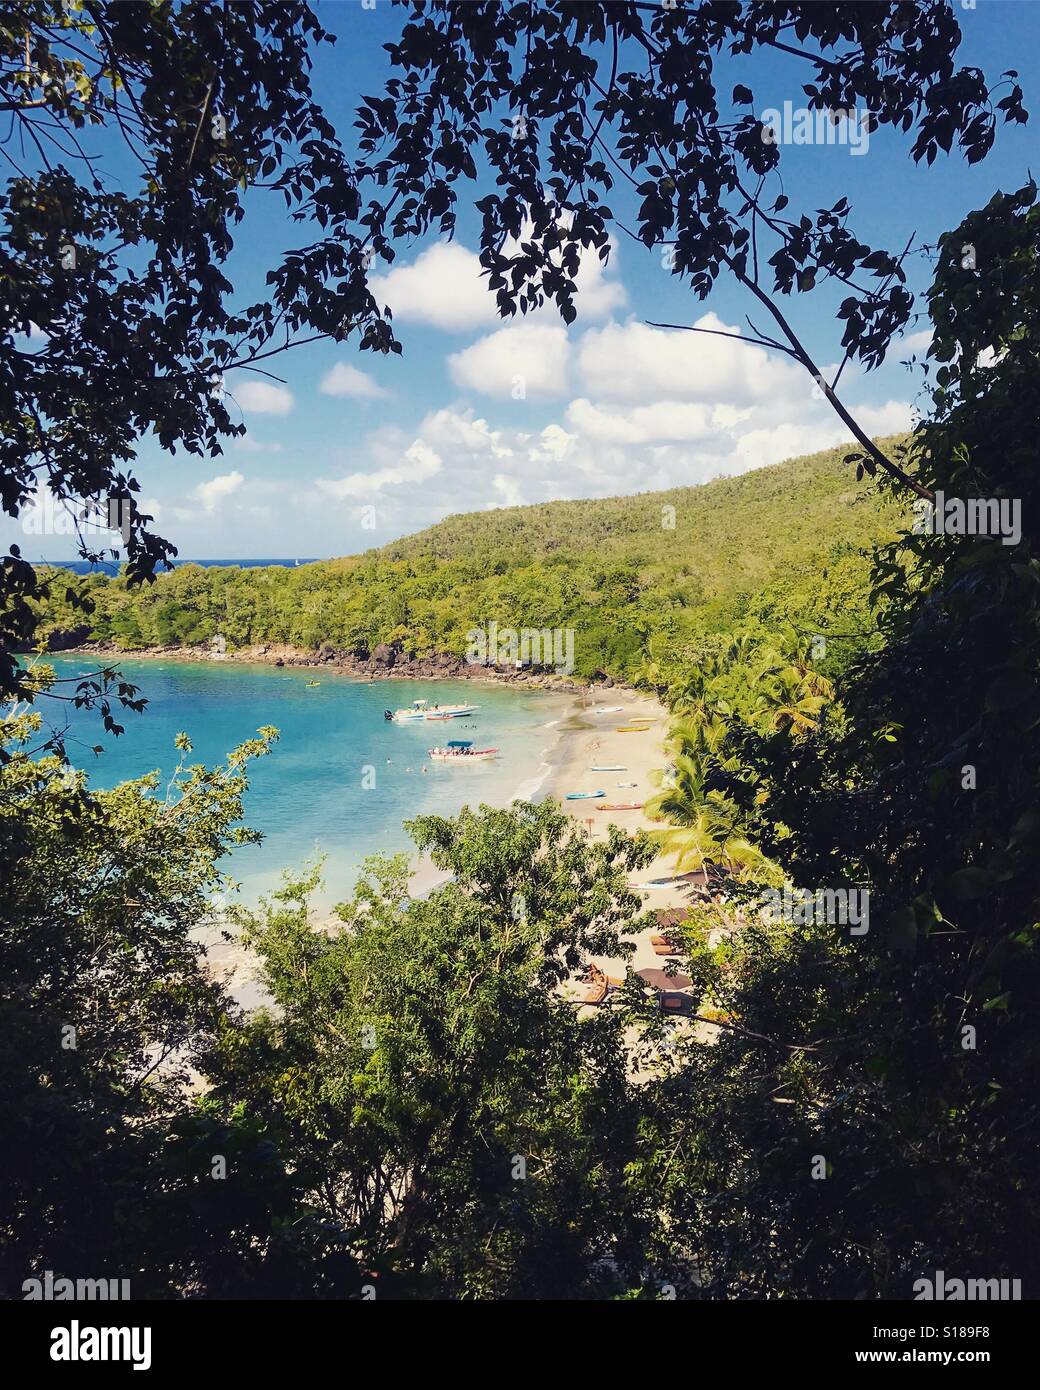 Ansicht des Strandes durch Laub - St. Lucia - Karibik Stockfoto